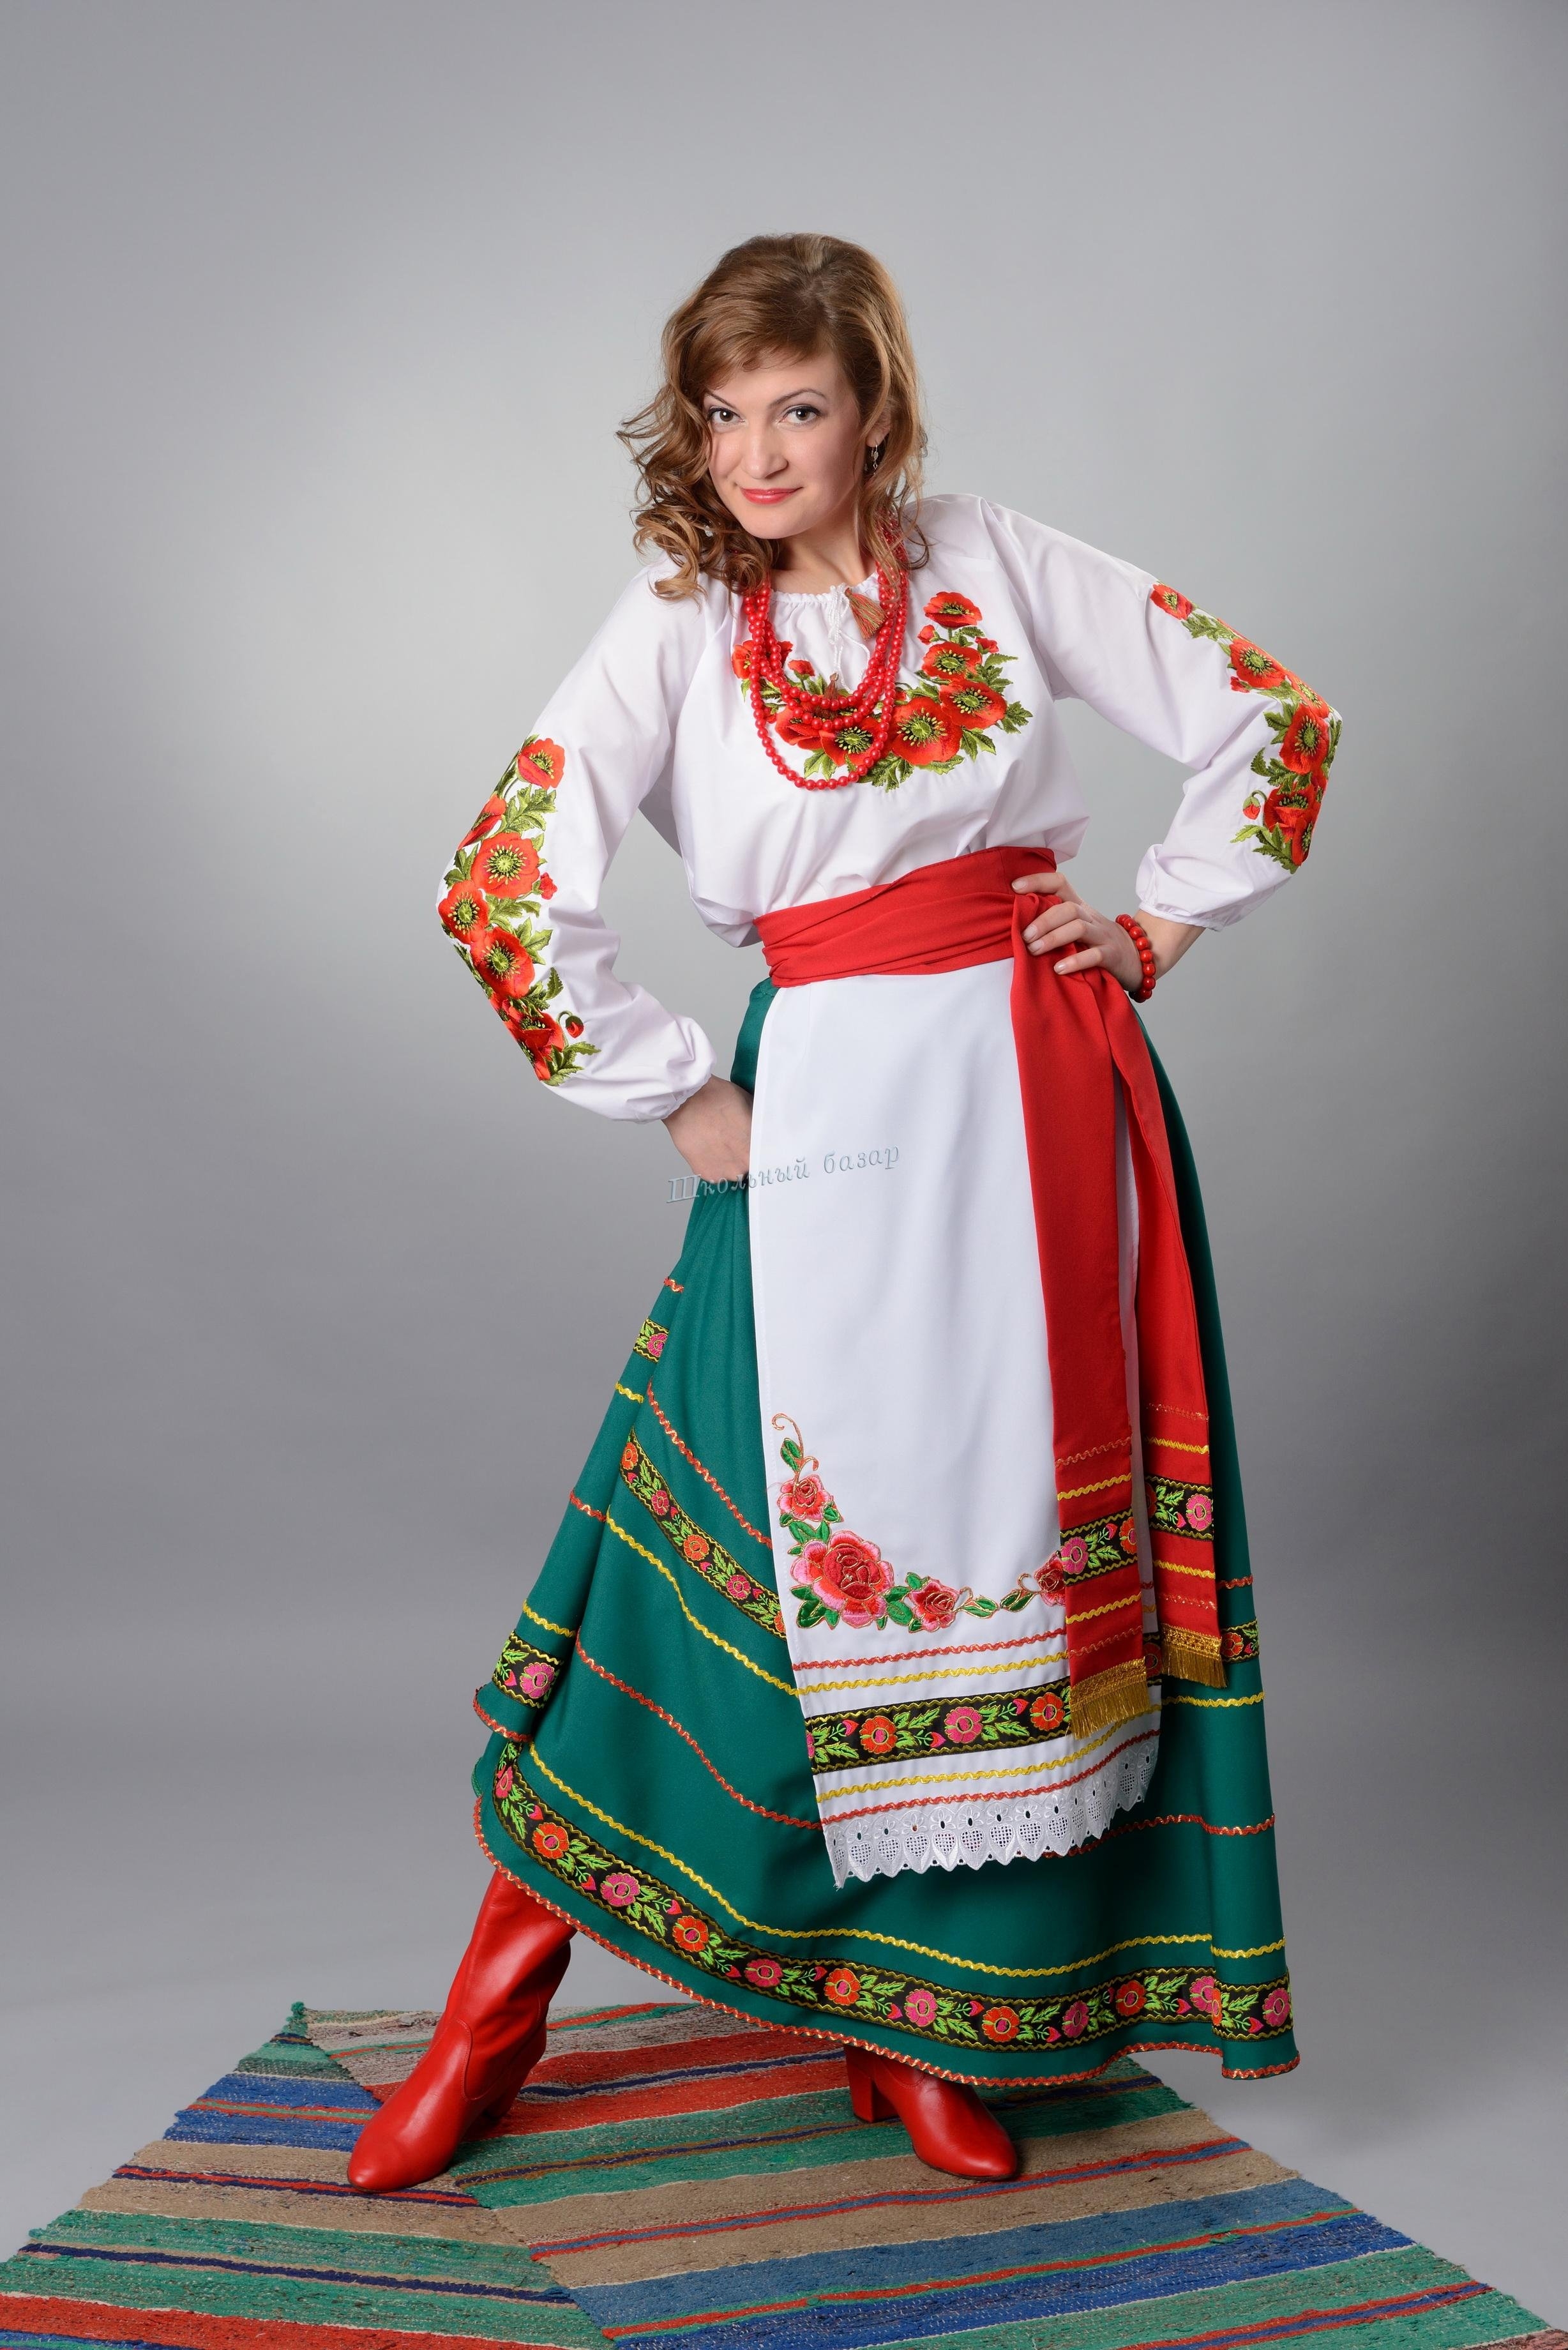 1 национальный украины. Украинский национальный костюм. Украинский народный костюм. Укинсккий национальной костюм. Украинский костюм женский.